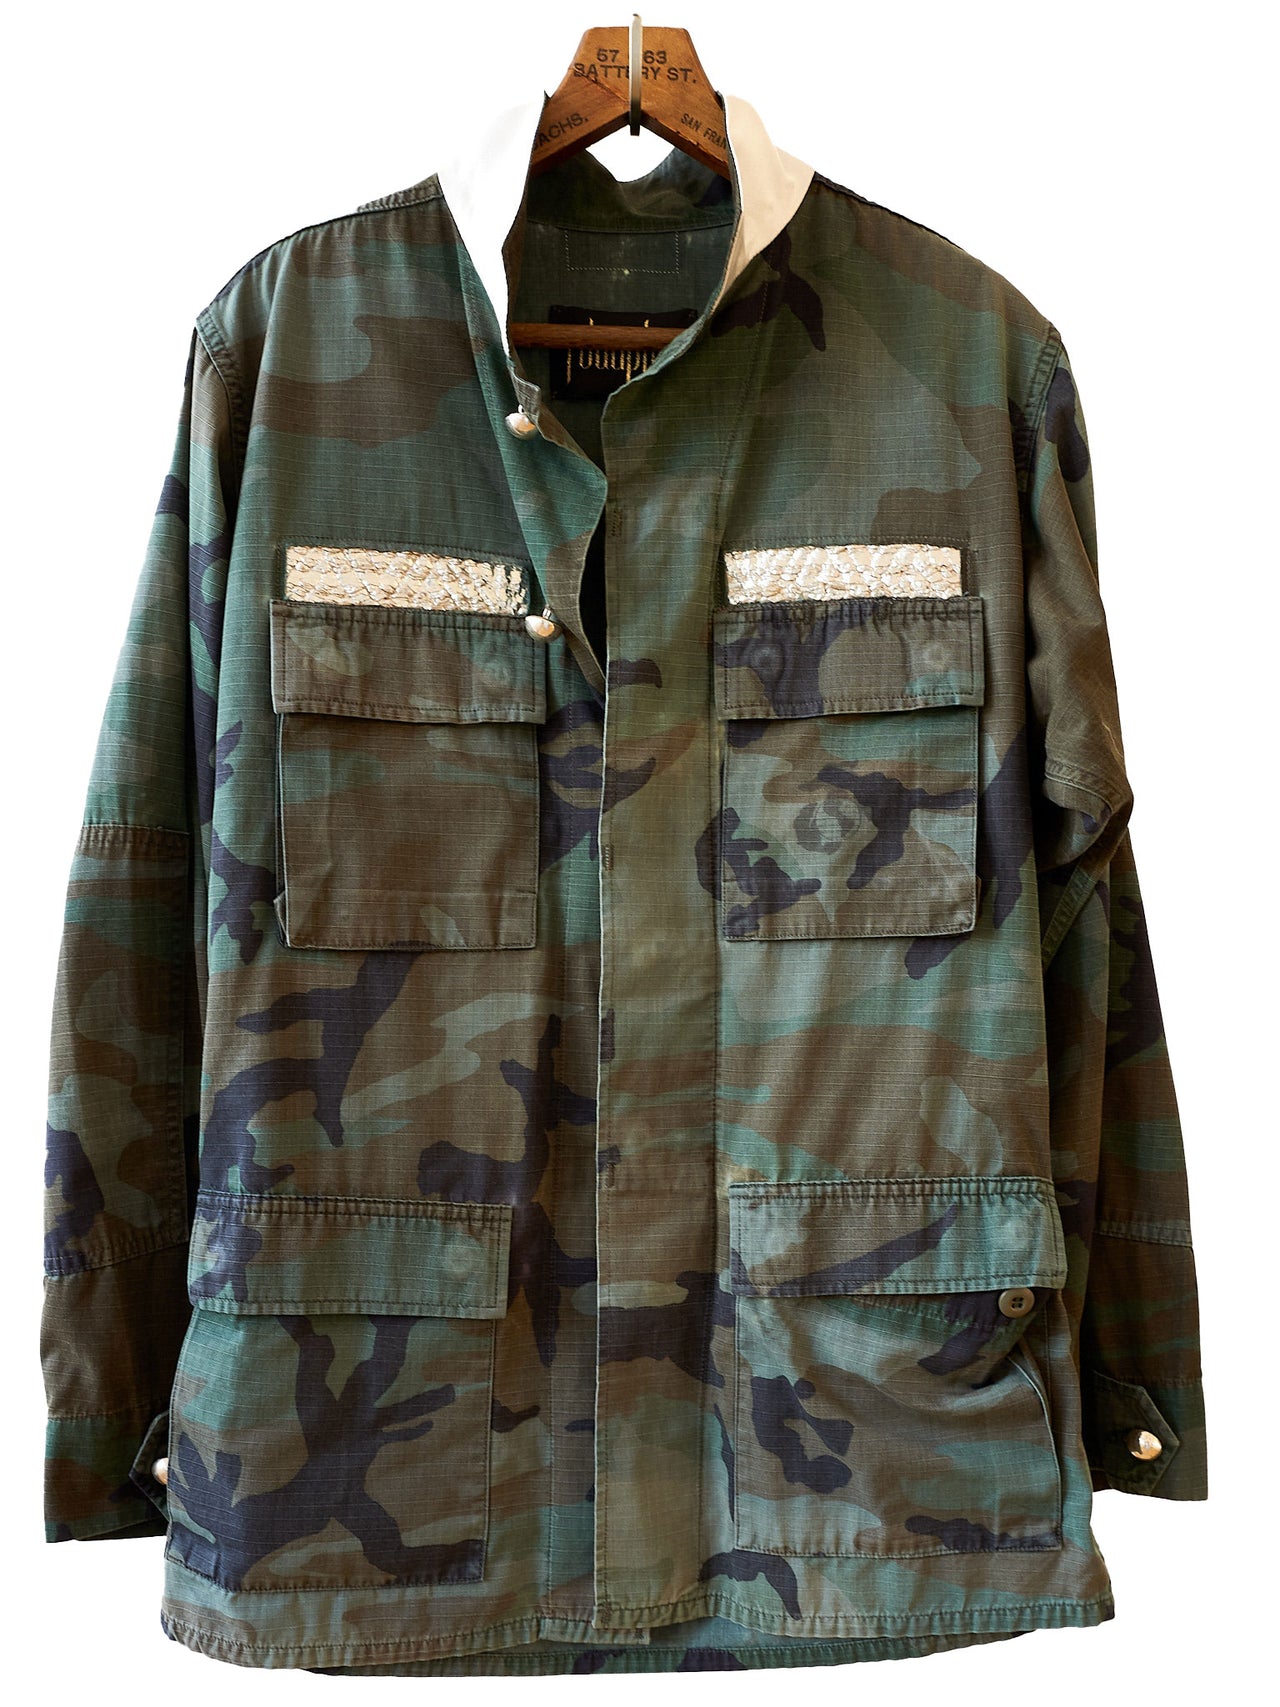 Camouflage Military Jacket Petroleum Silver Embellishments Large